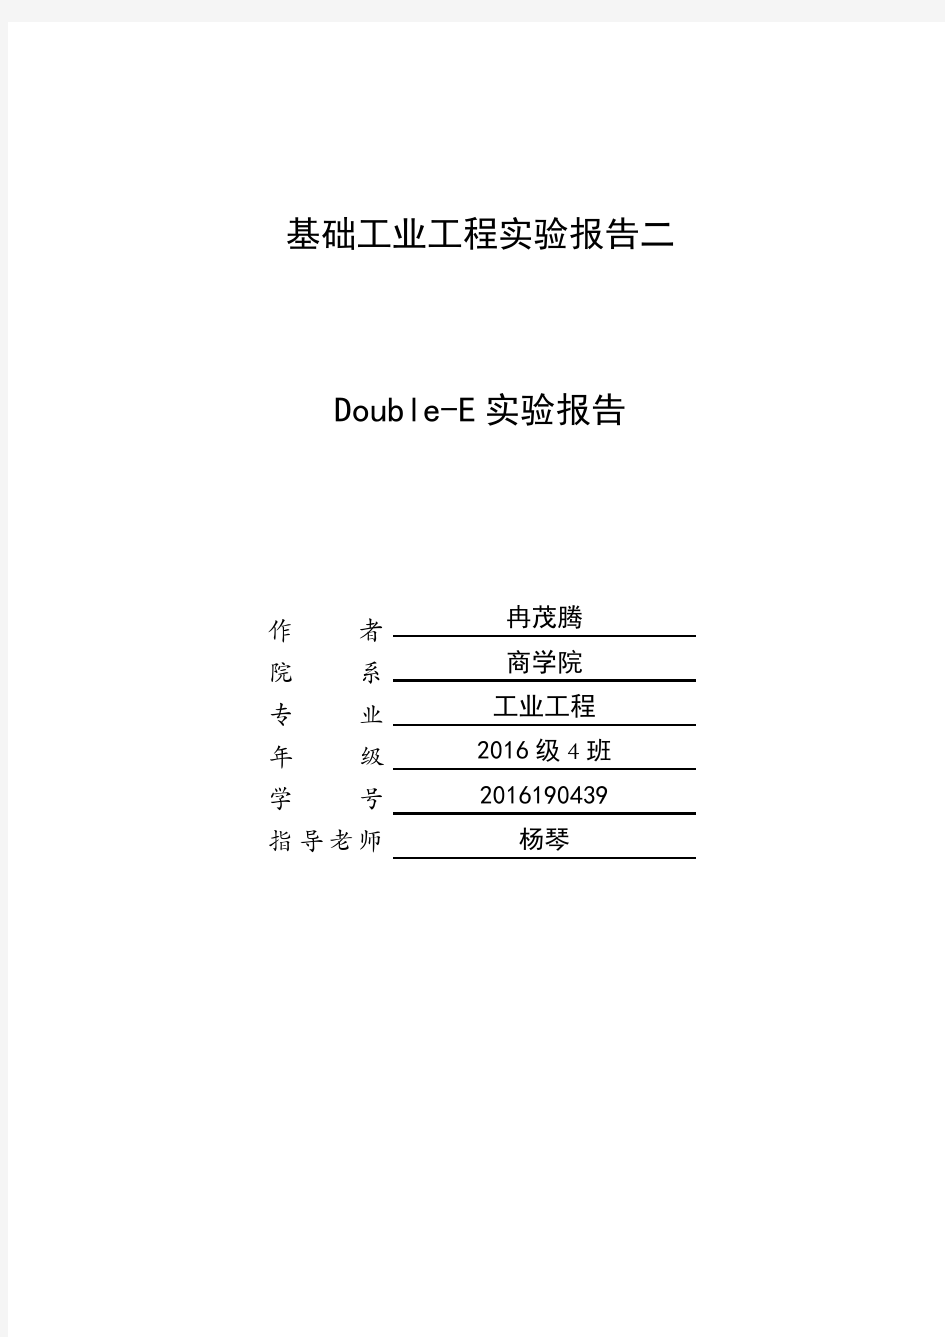 基础工业工程Double E(达宝易)实验优化报告